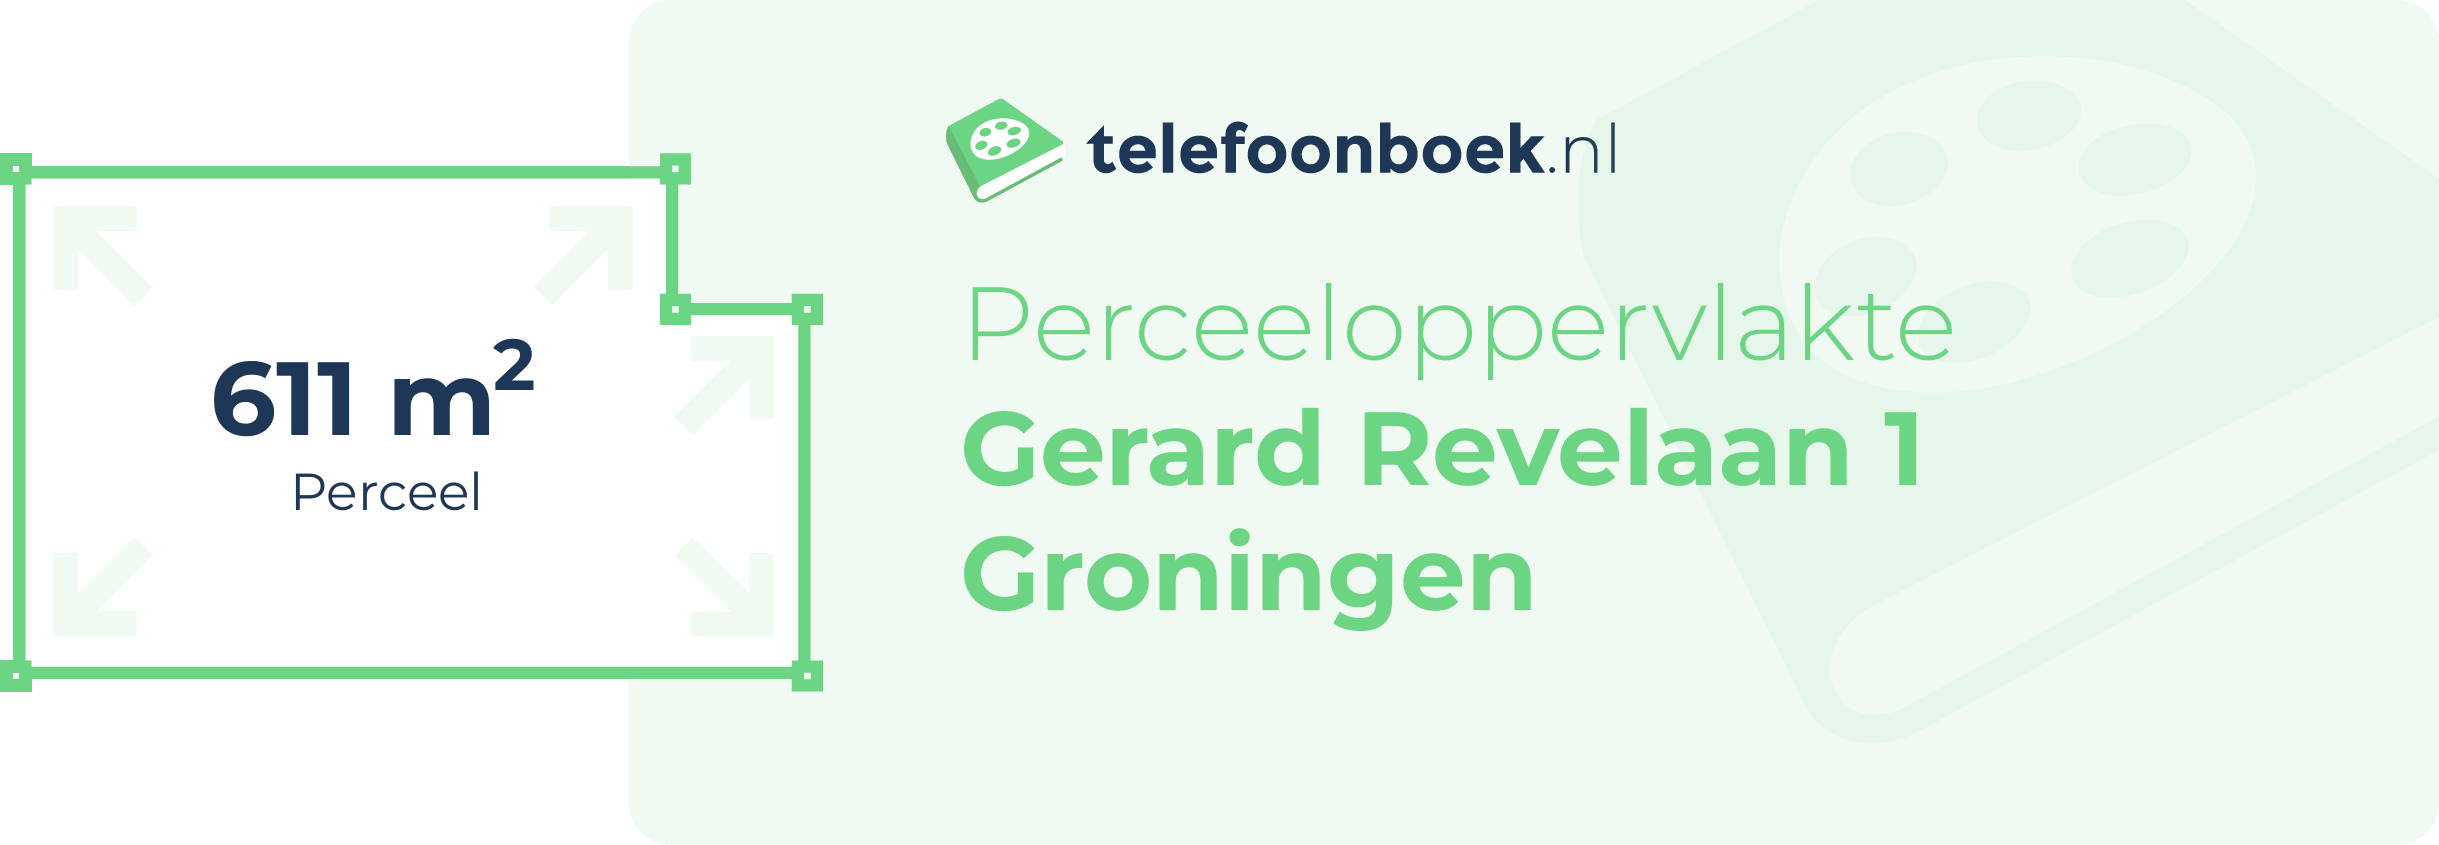 Perceeloppervlakte Gerard Revelaan 1 Groningen